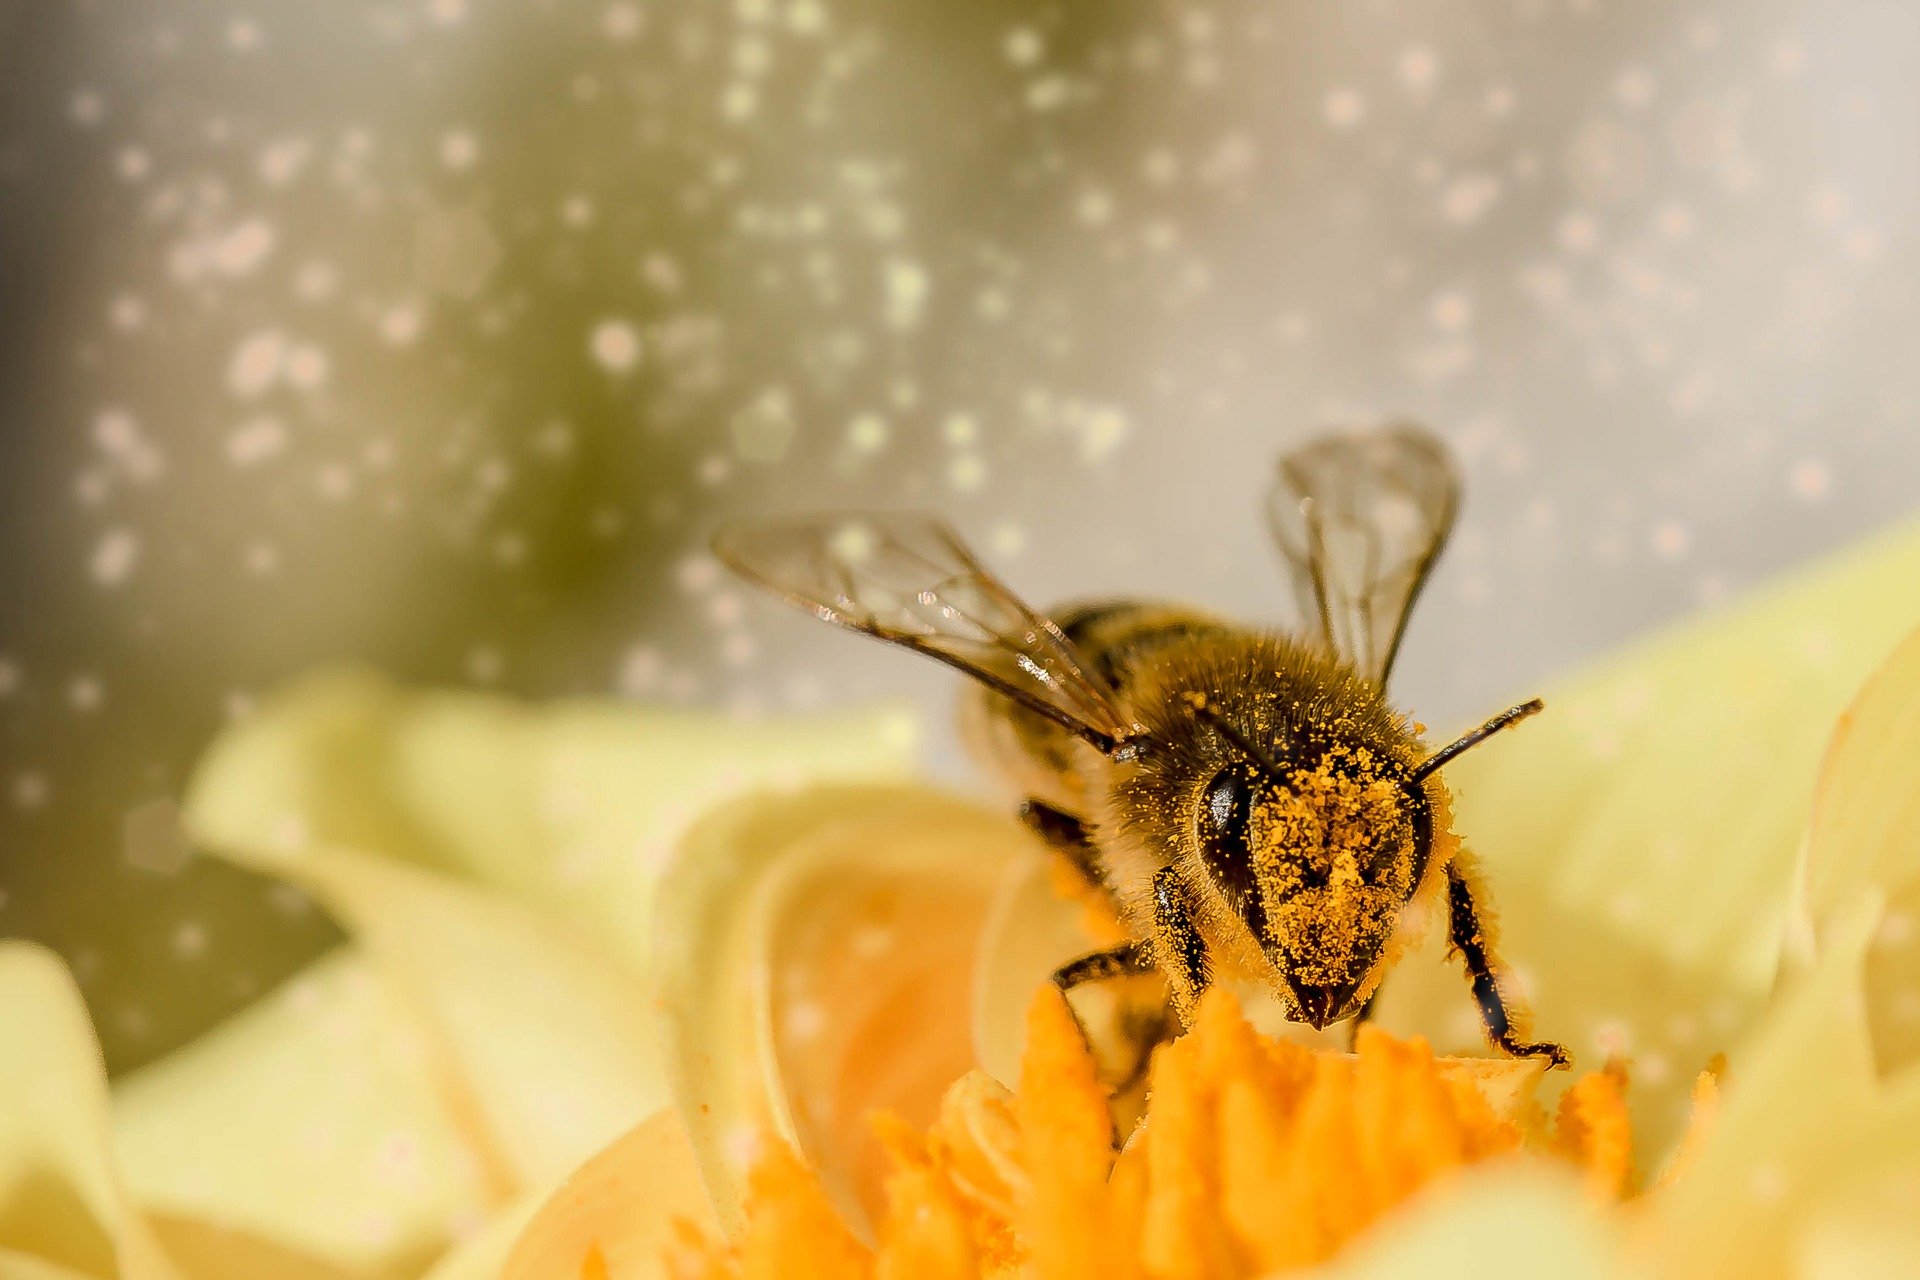 A méhek világa (More Than Honey)